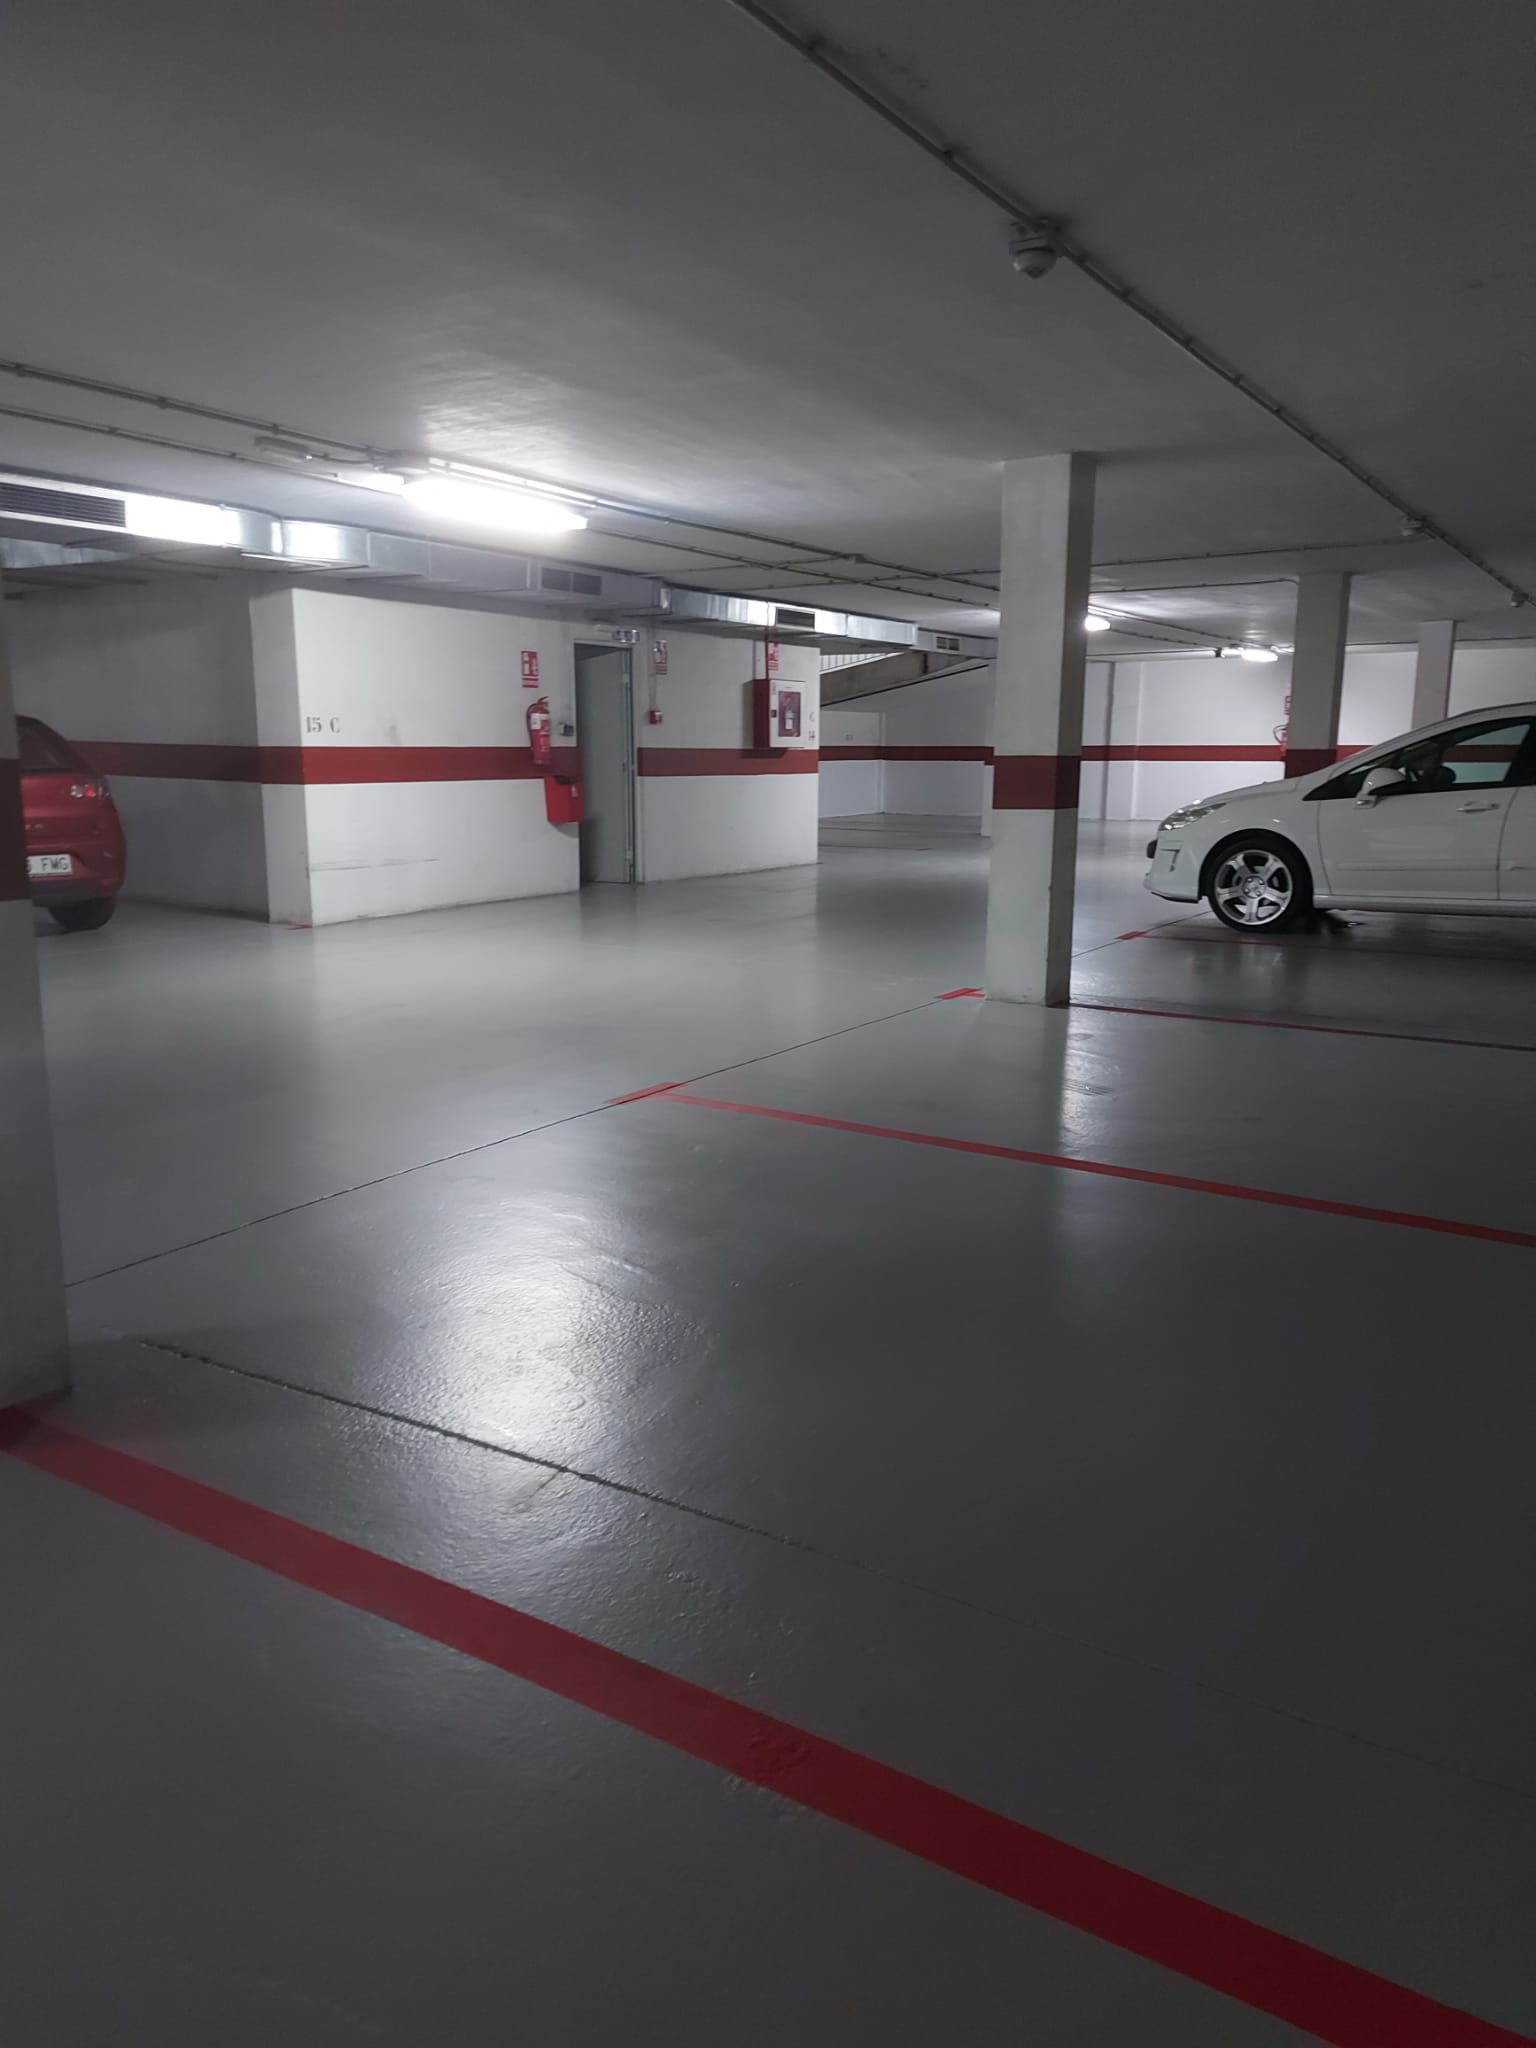 Pintura epoxi es una solución perfecta para parkings [Actualizado]